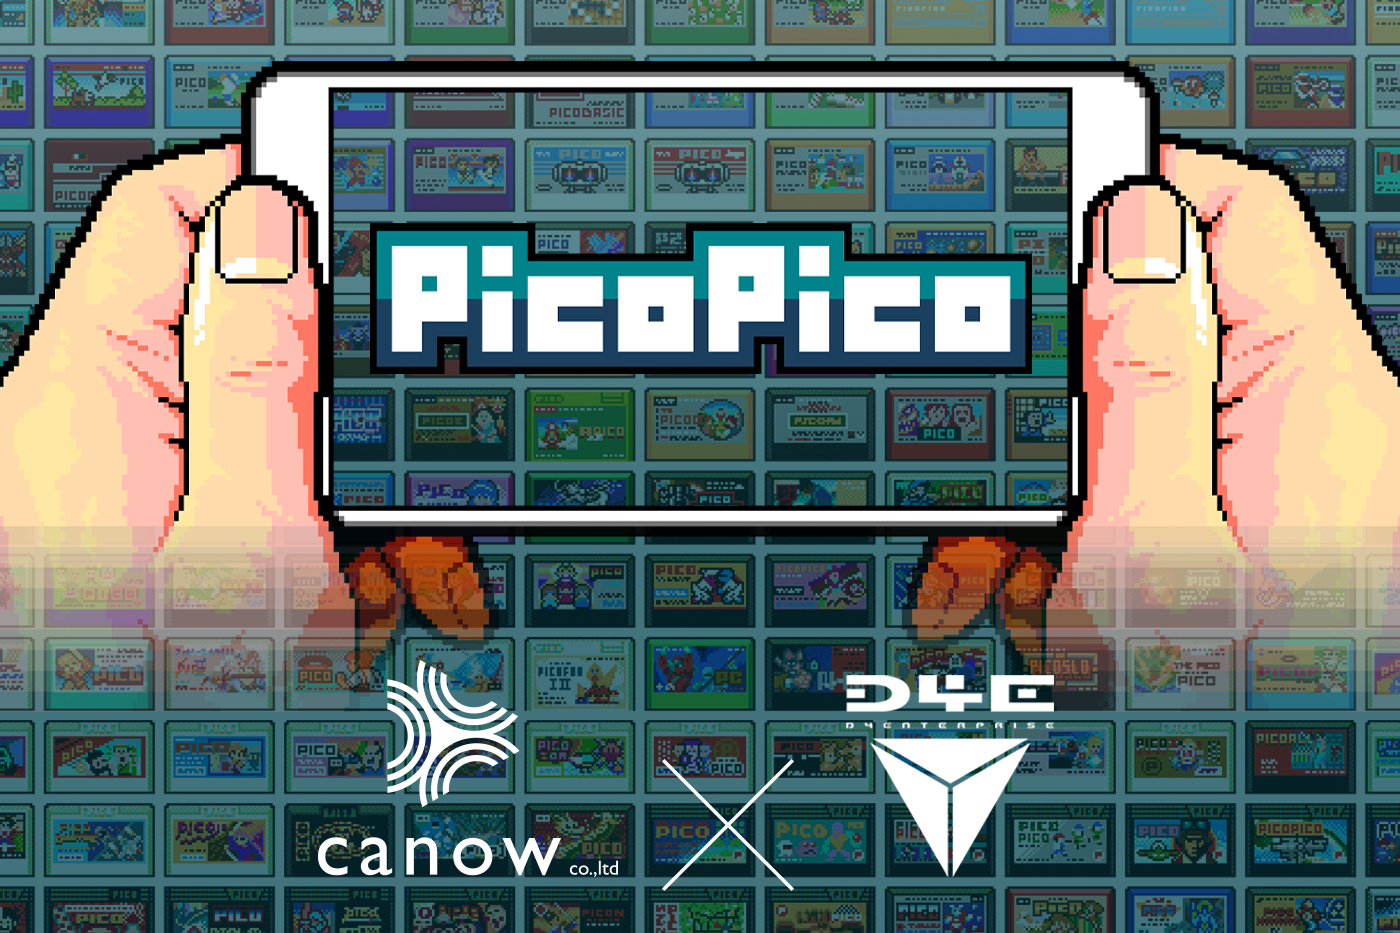 iPhoneやiPadでレトロゲームが遊べる『PicoPico（ピコピコ）』にcanowが出資。将来的にトークンやブロックチェーン技術も導入